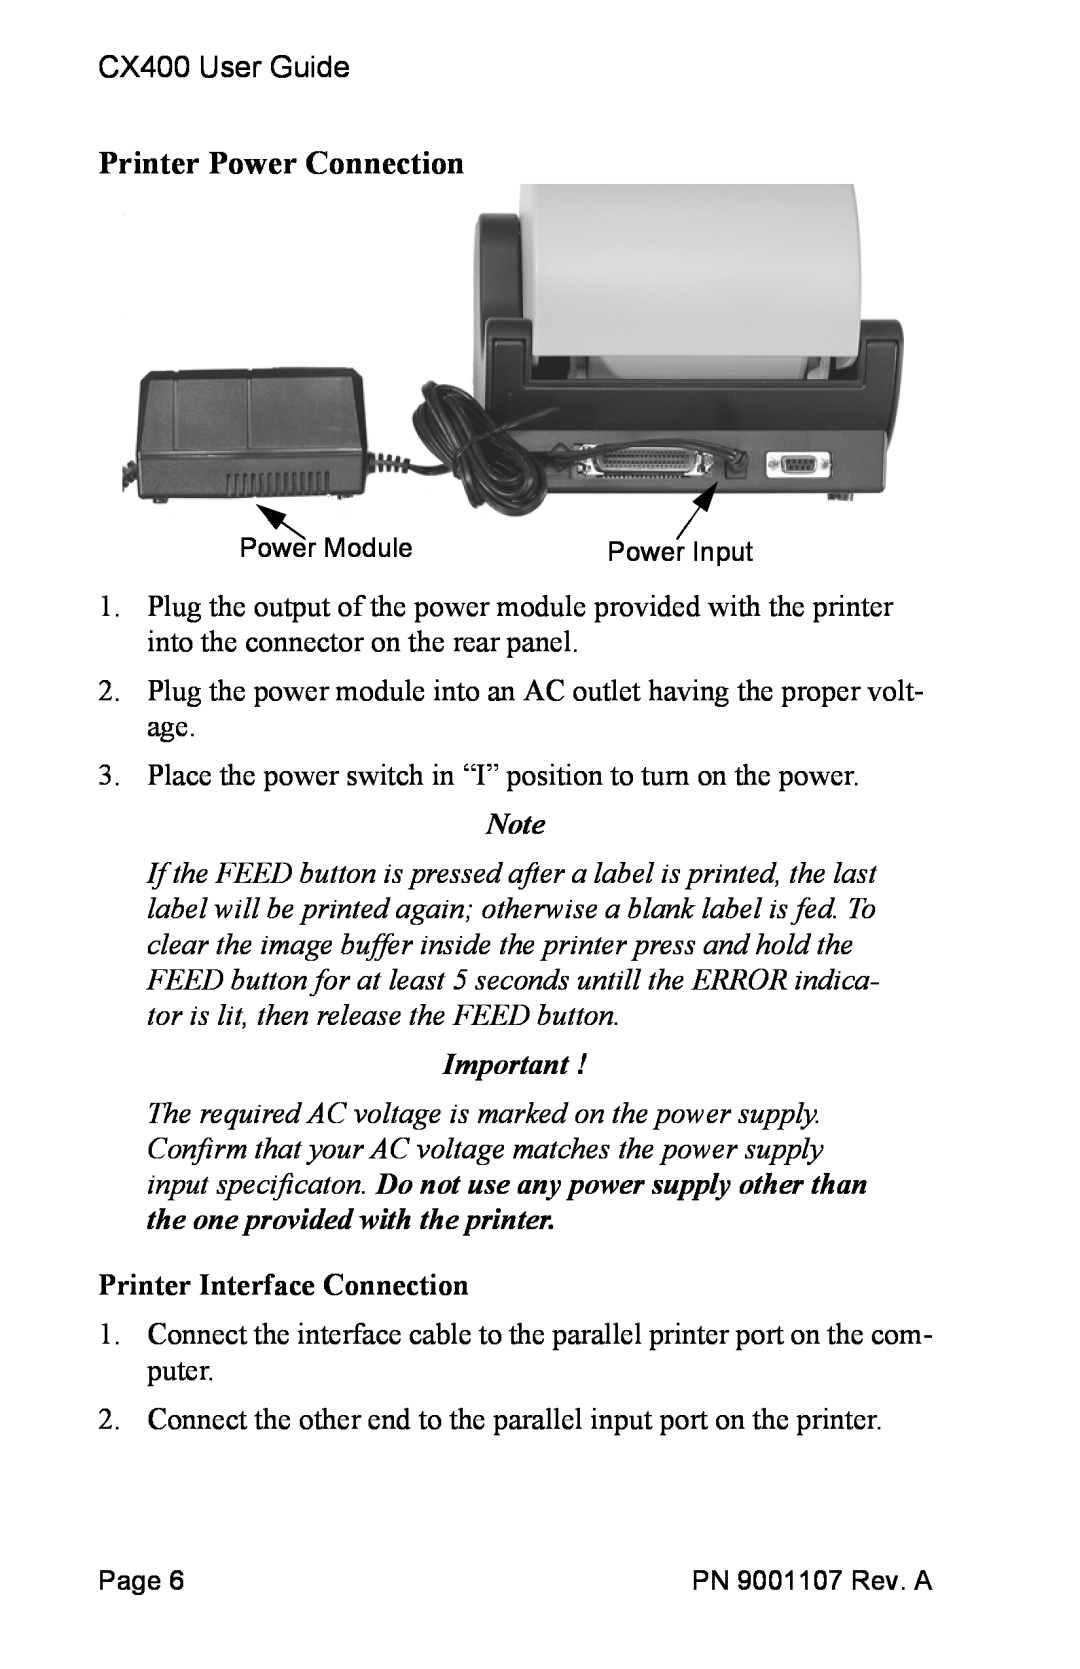 SATO 400 manual Printer Power Connection, Printer Interface Connection 